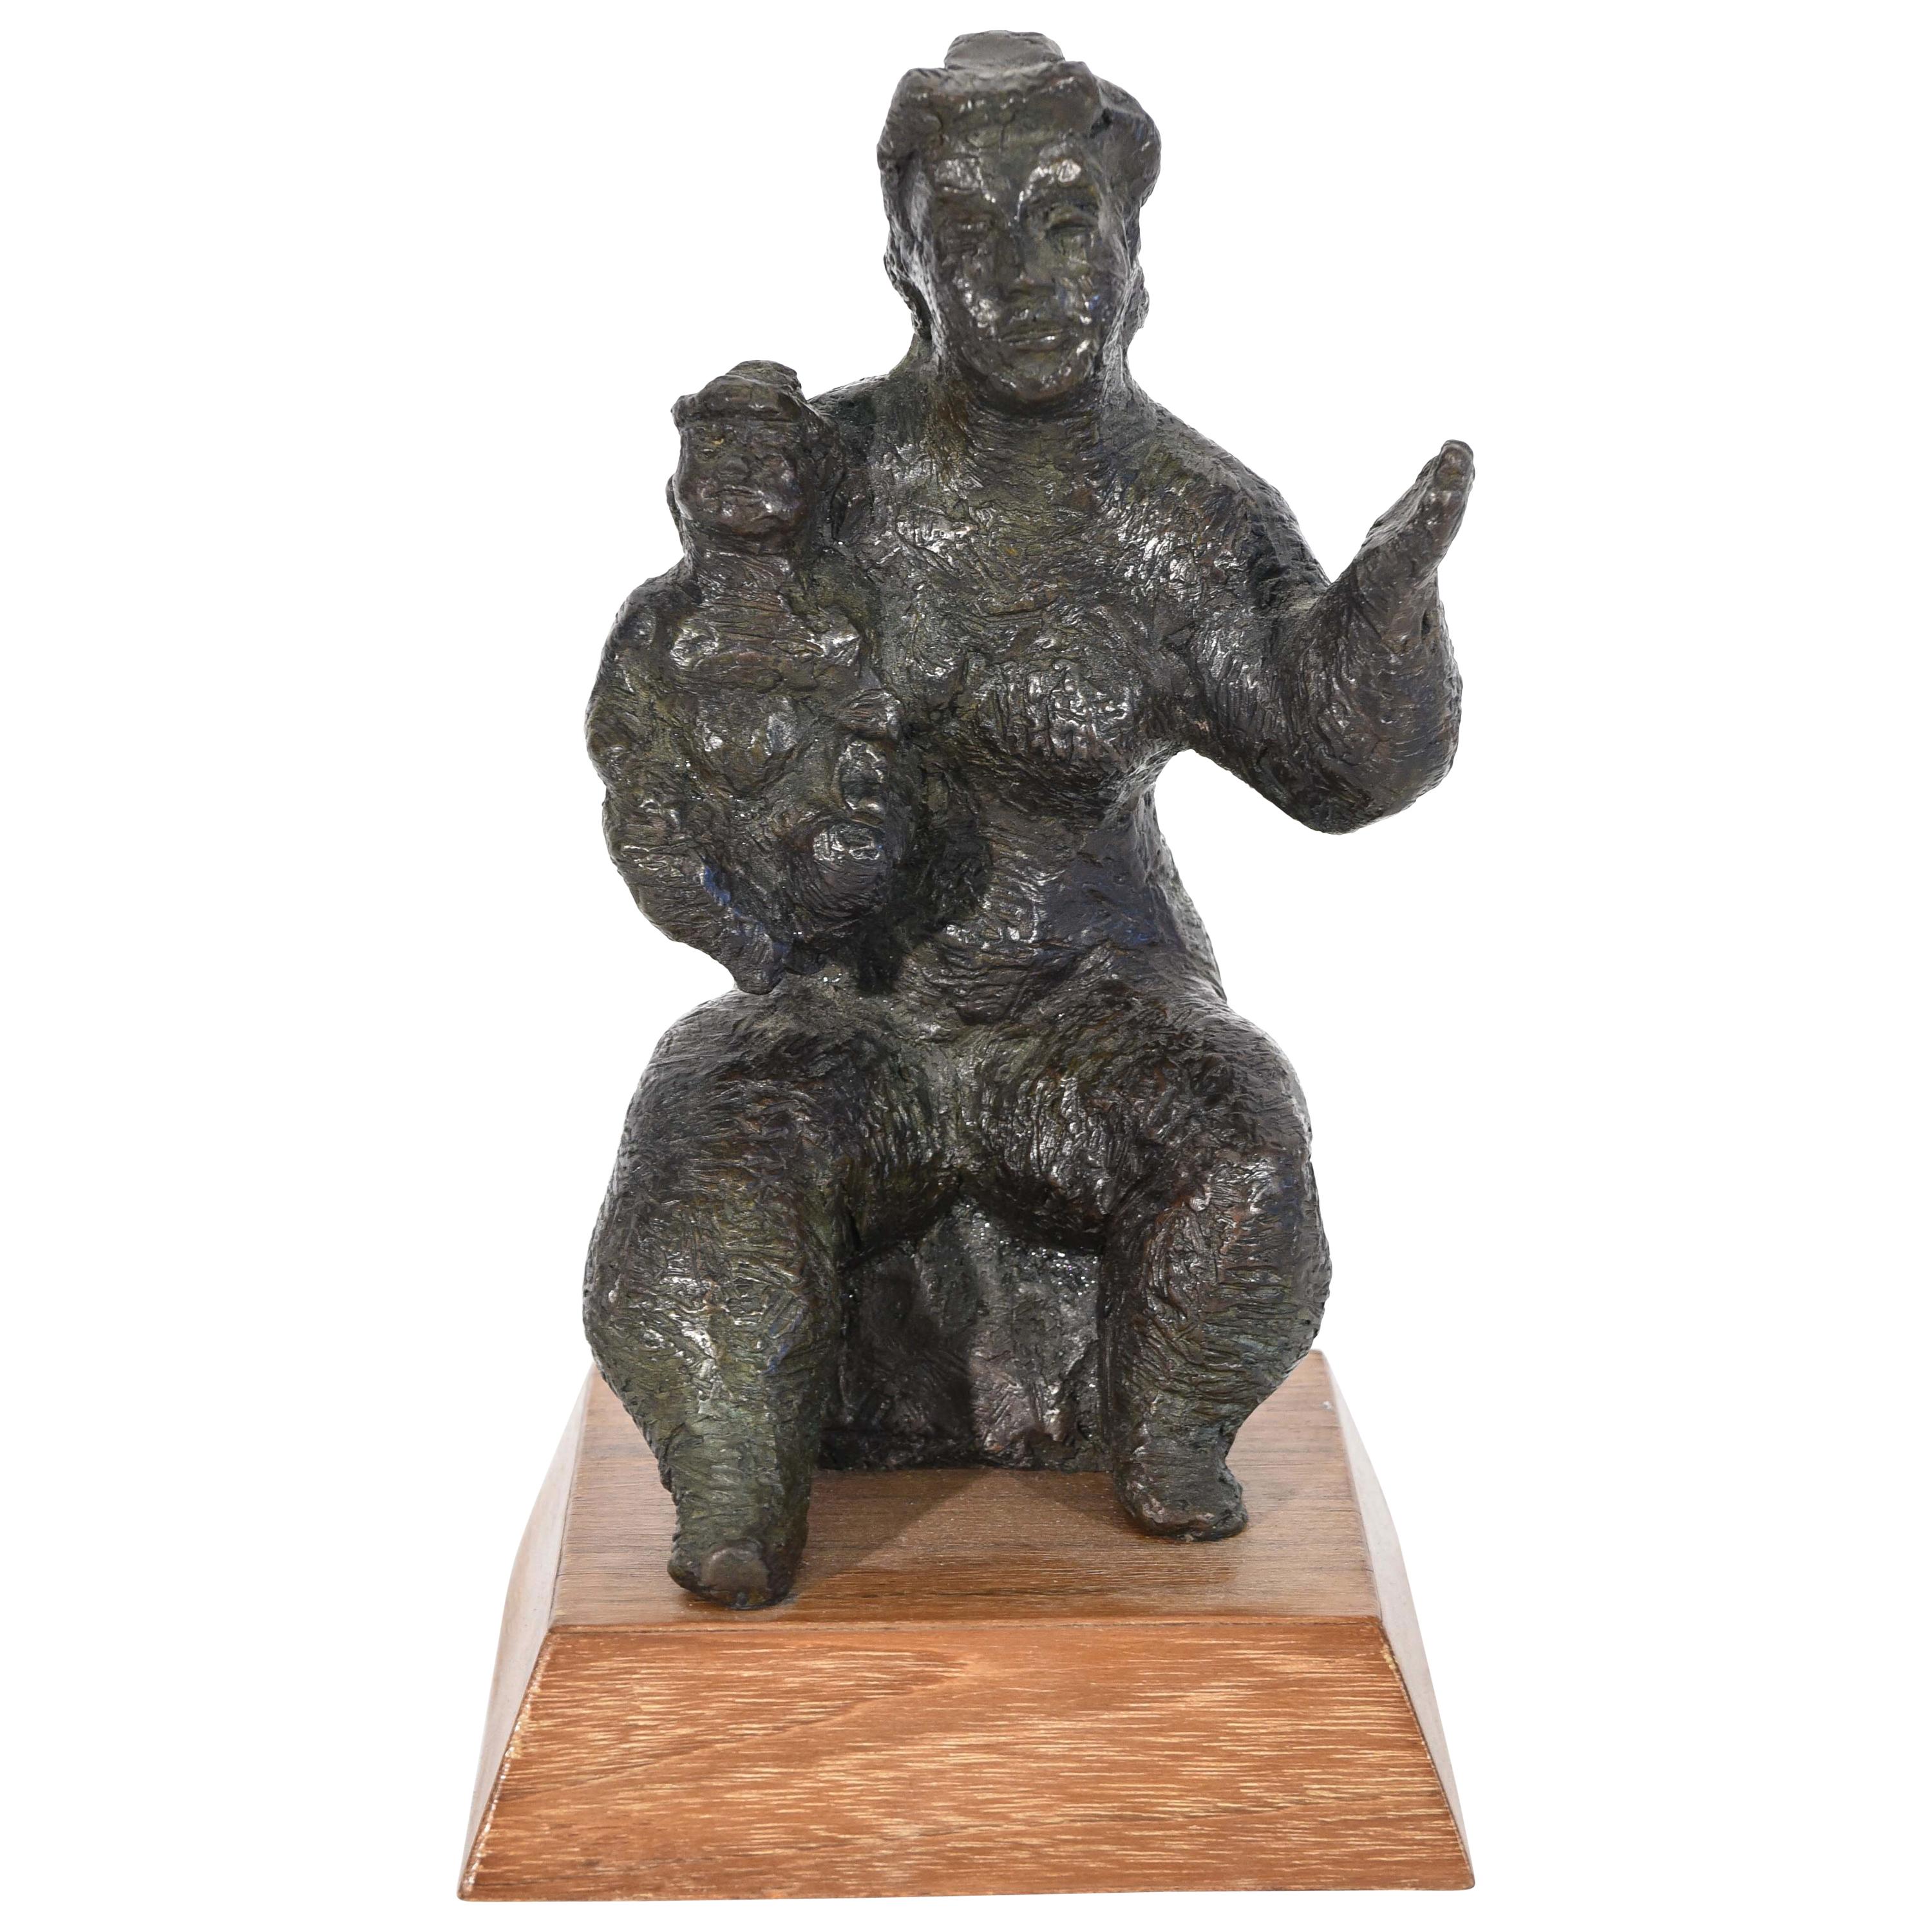 Chaim Gross Escultura figurativa de bronce "Orgullo de madre", Madre e hijo